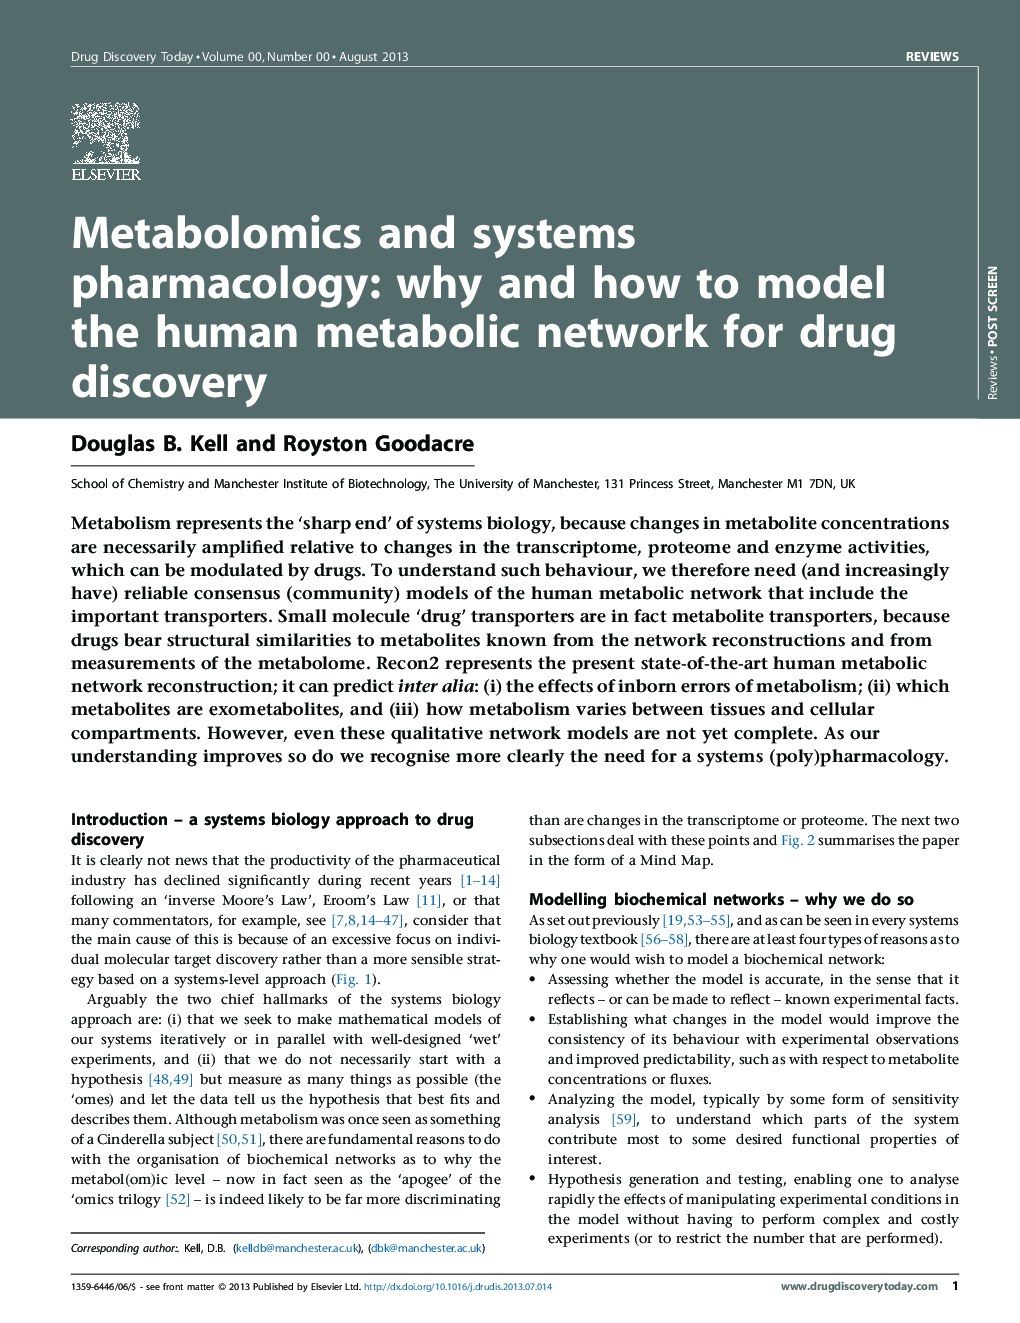 متابولومیک و سیستم های دارویی: چرا و چگونه مدل شبکه متابولیسم انسان برای کشف مواد مخدر را مدل می کند 